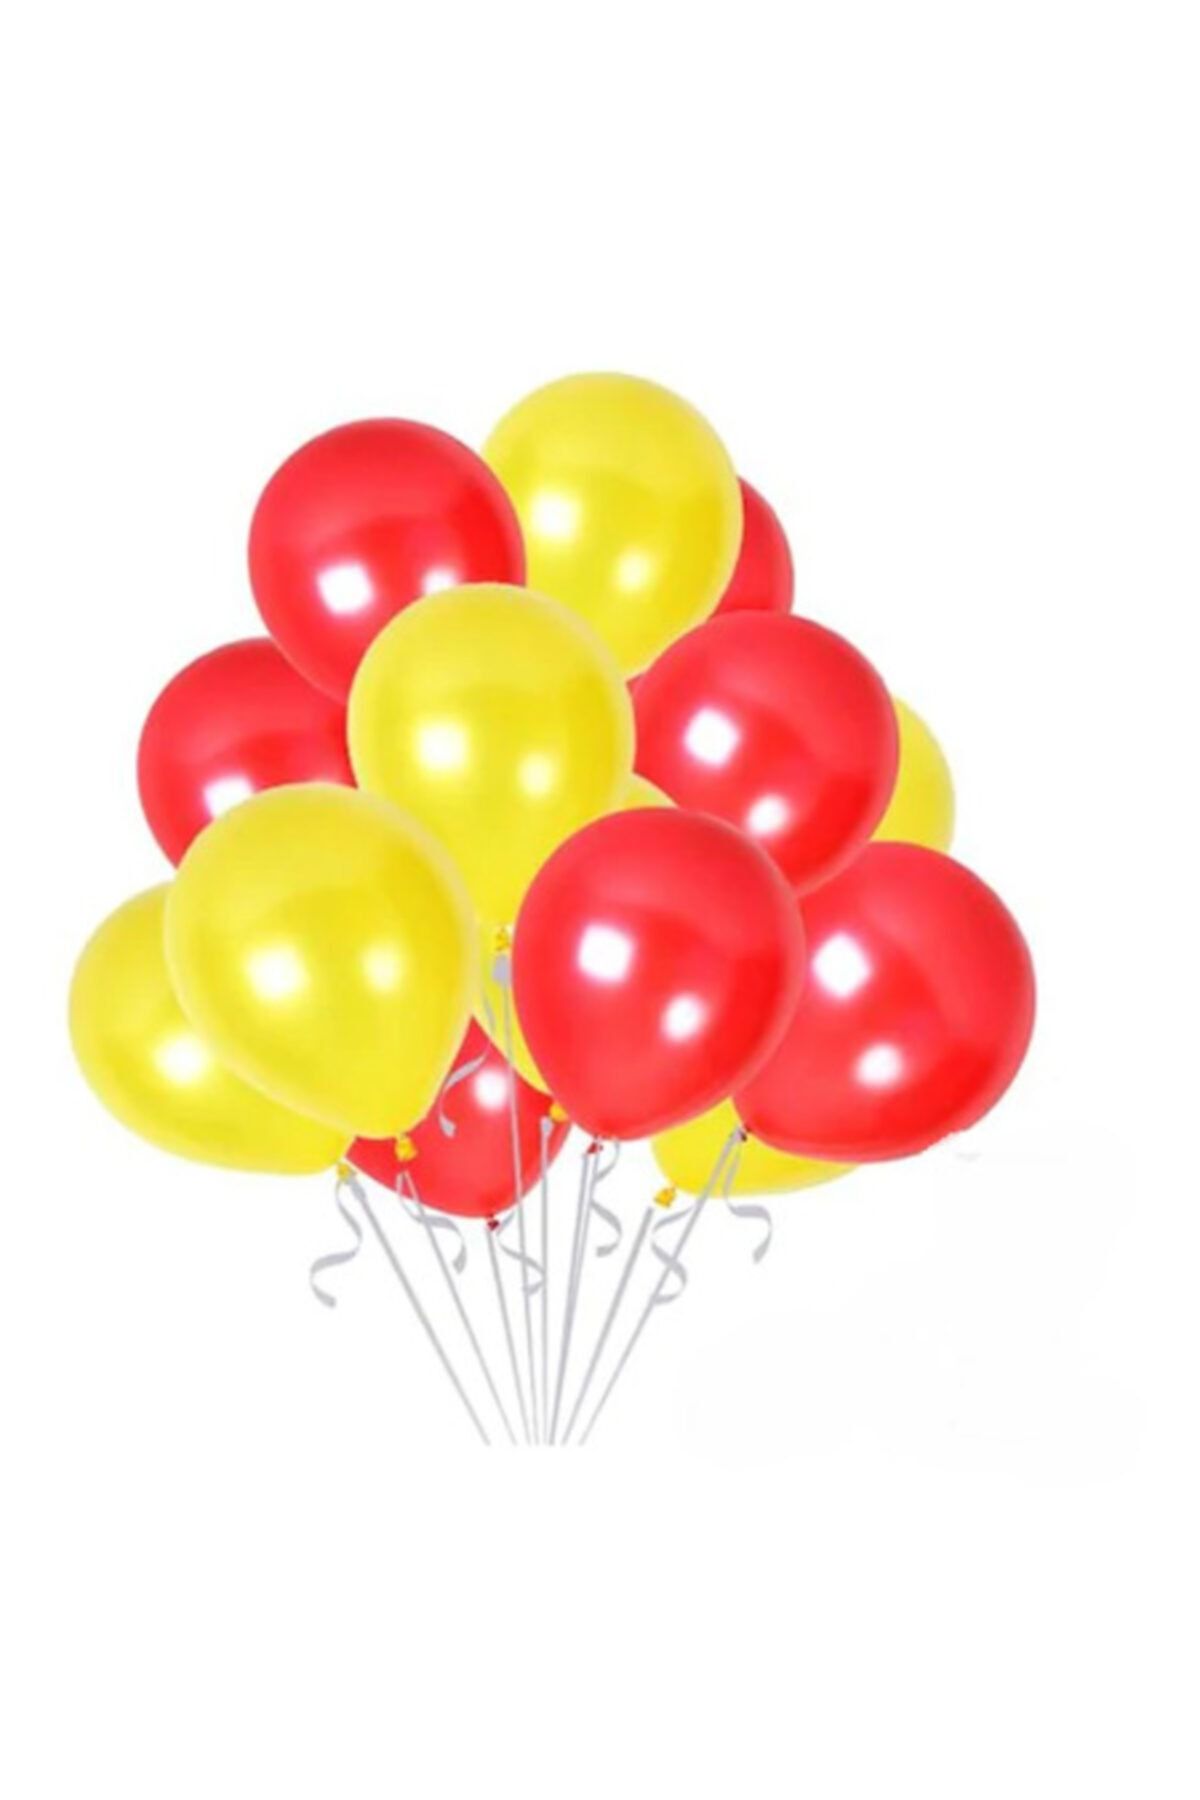 ikm balon 30 Lu Sarı Kırmızı Galatasaray Balon